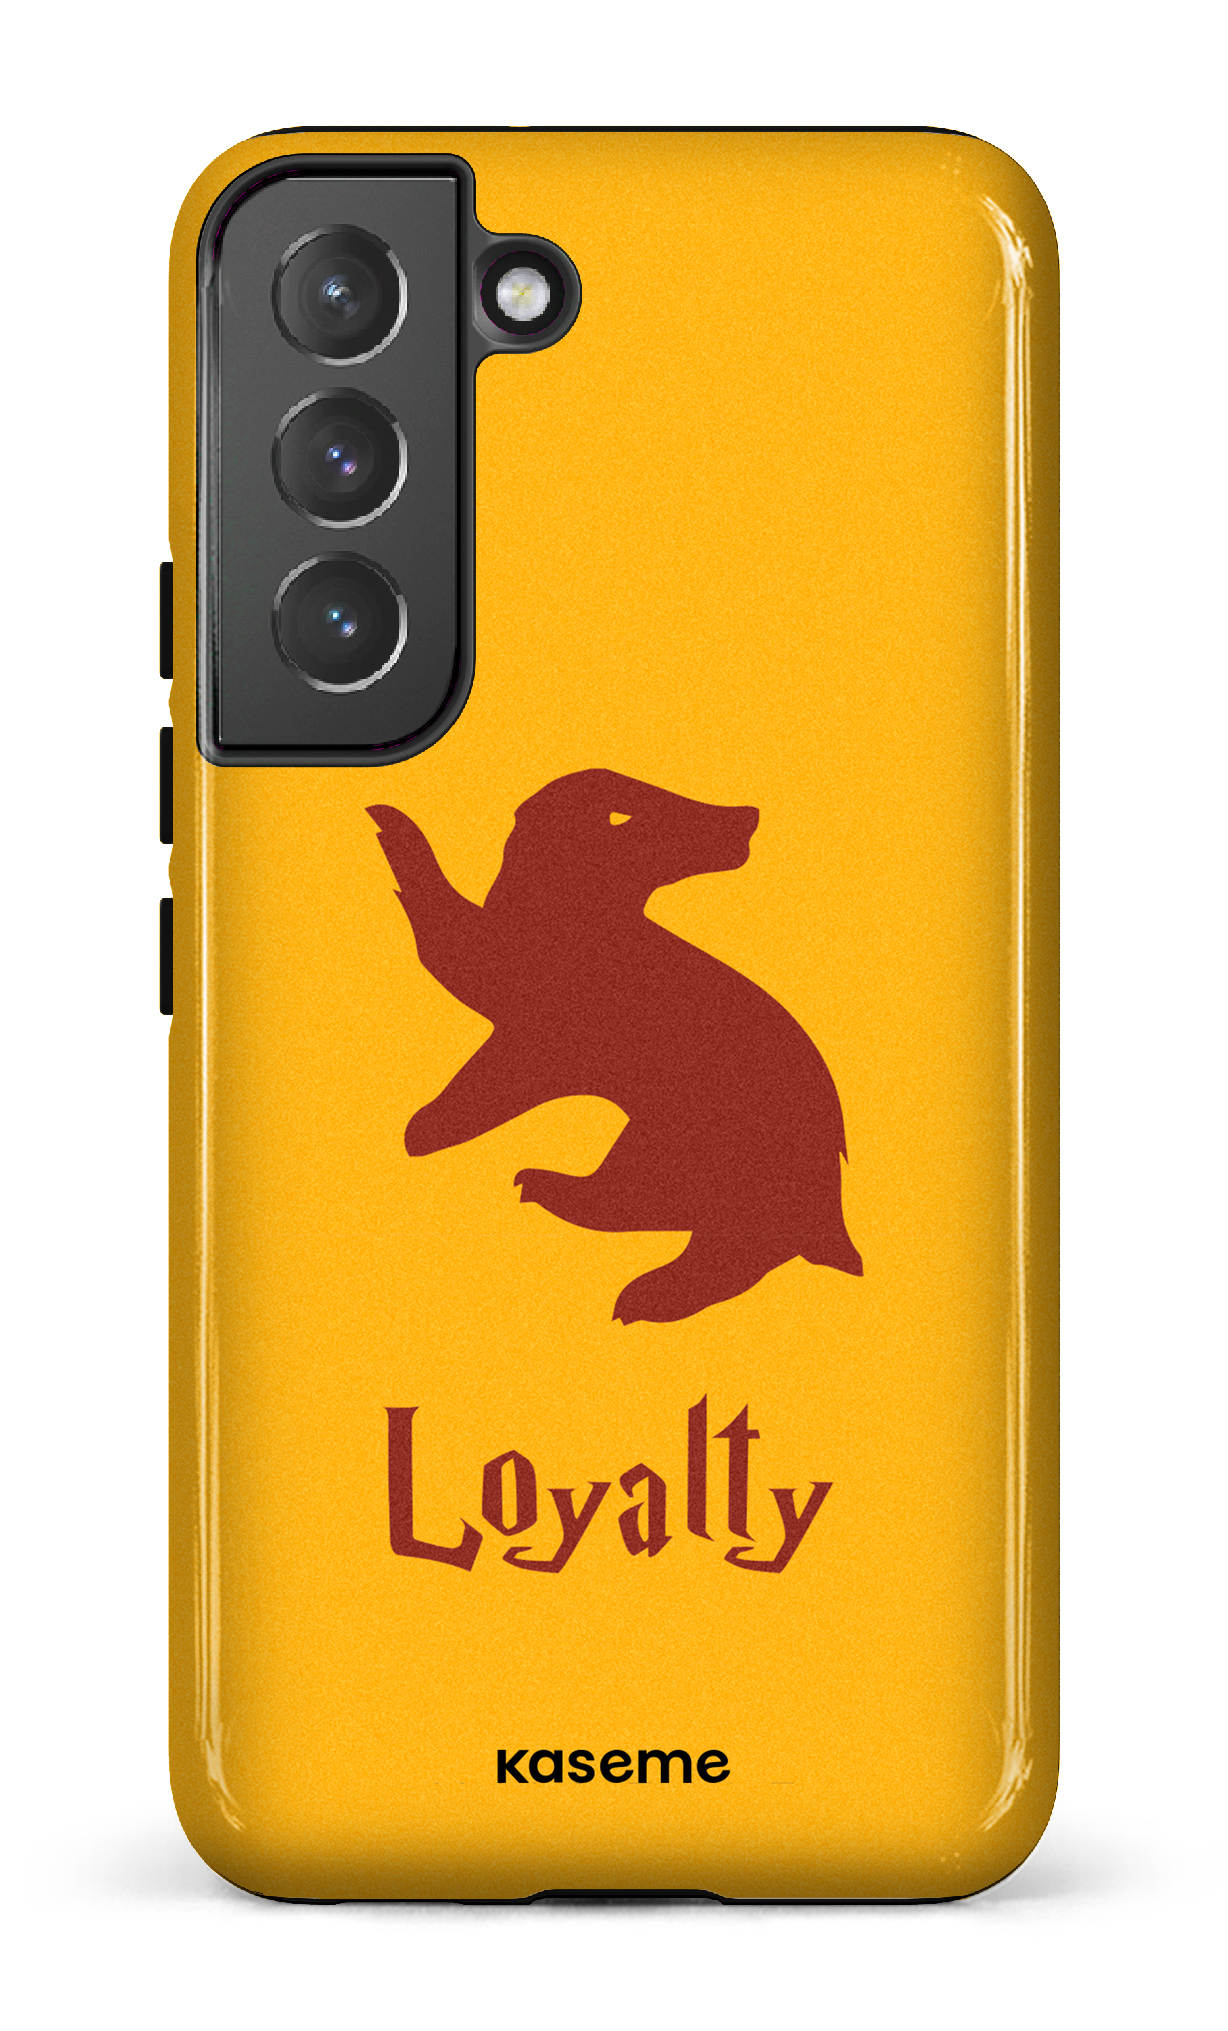 Loyalty - Galaxy S22